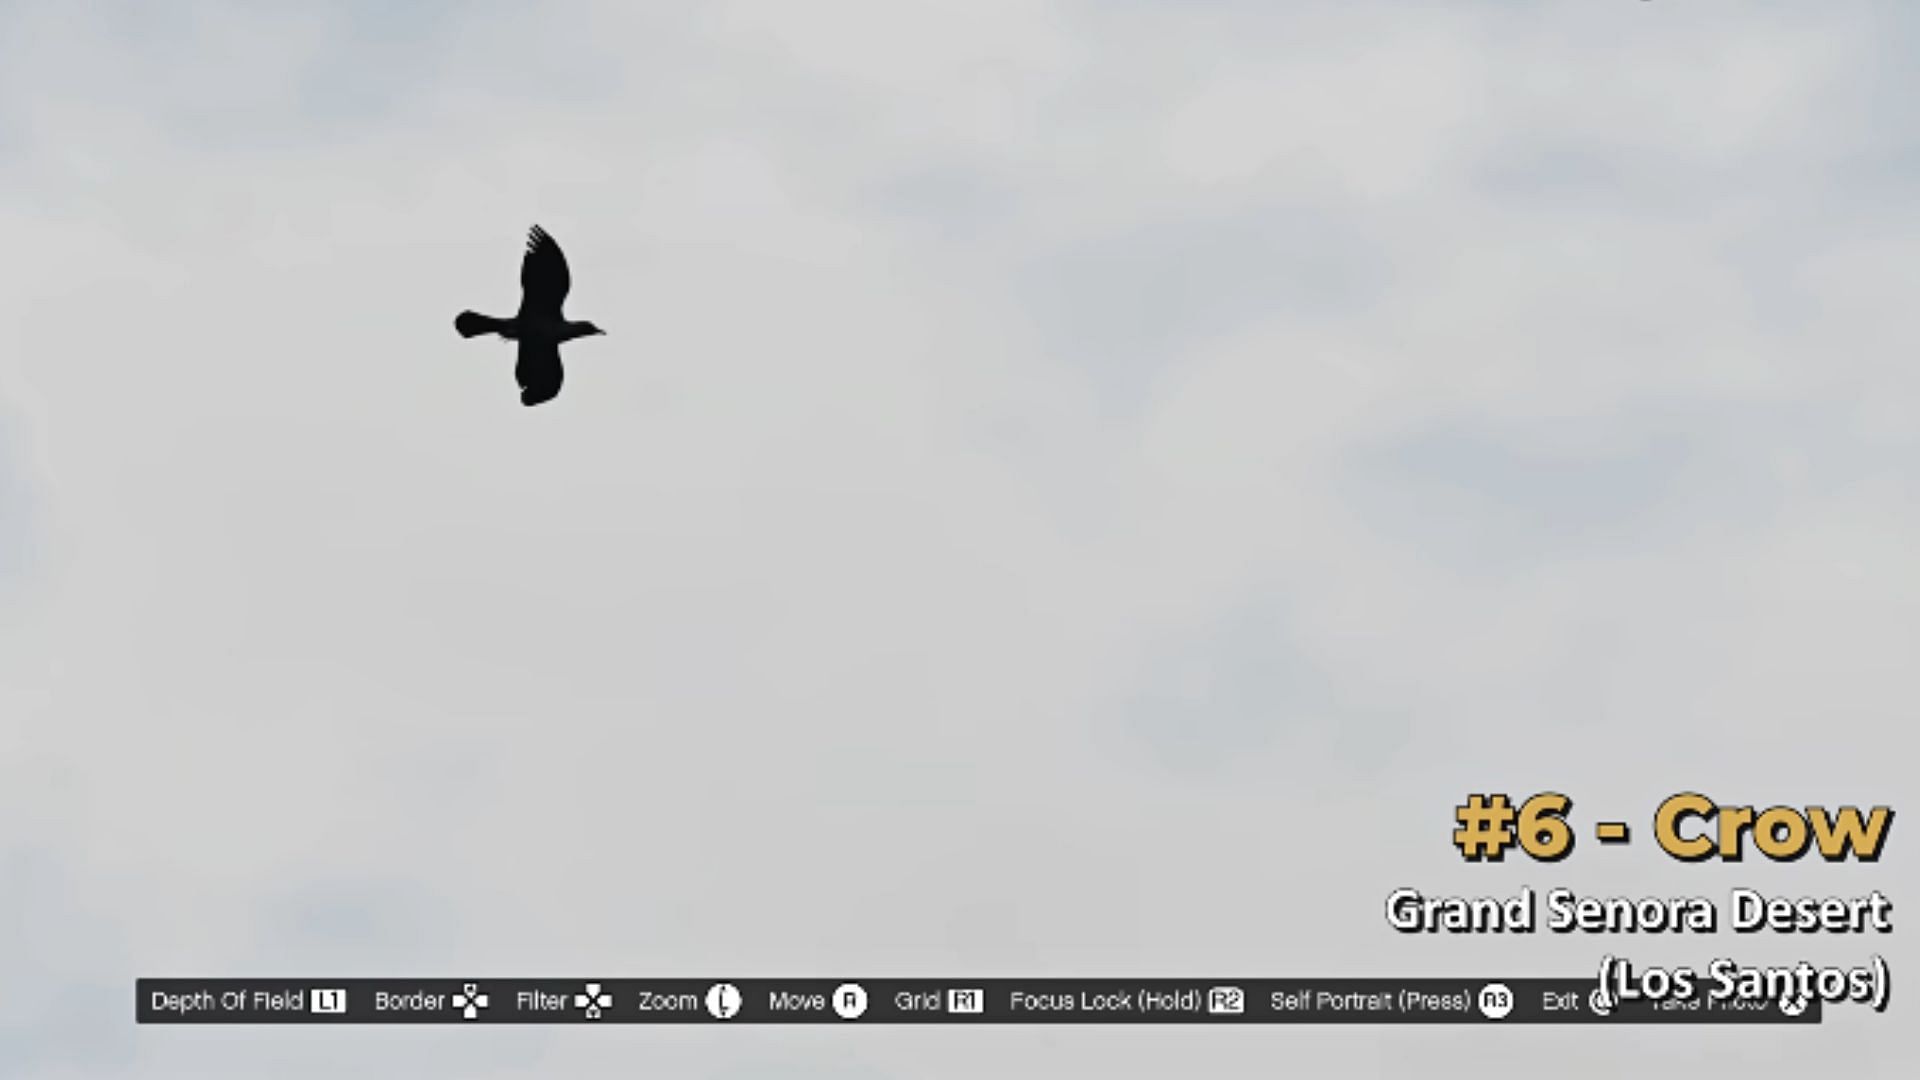 غراب يطير فوق صحراء غراند سينورا في مقاطعة بلين (الصورة عبر YouTube/سلسلة مقاطع فيديو GTA)